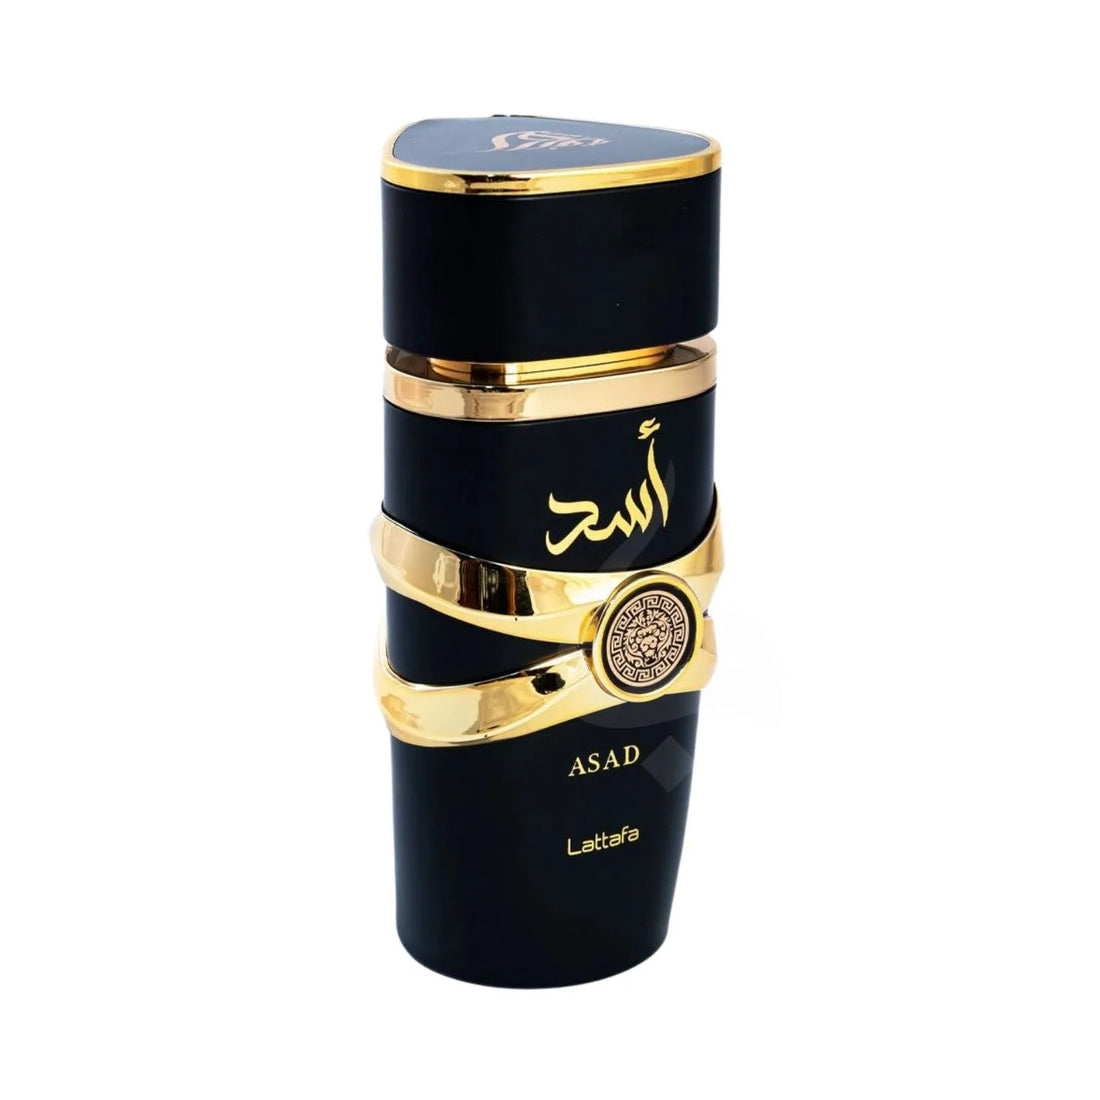 Asad Perfume Lattafa Bottle